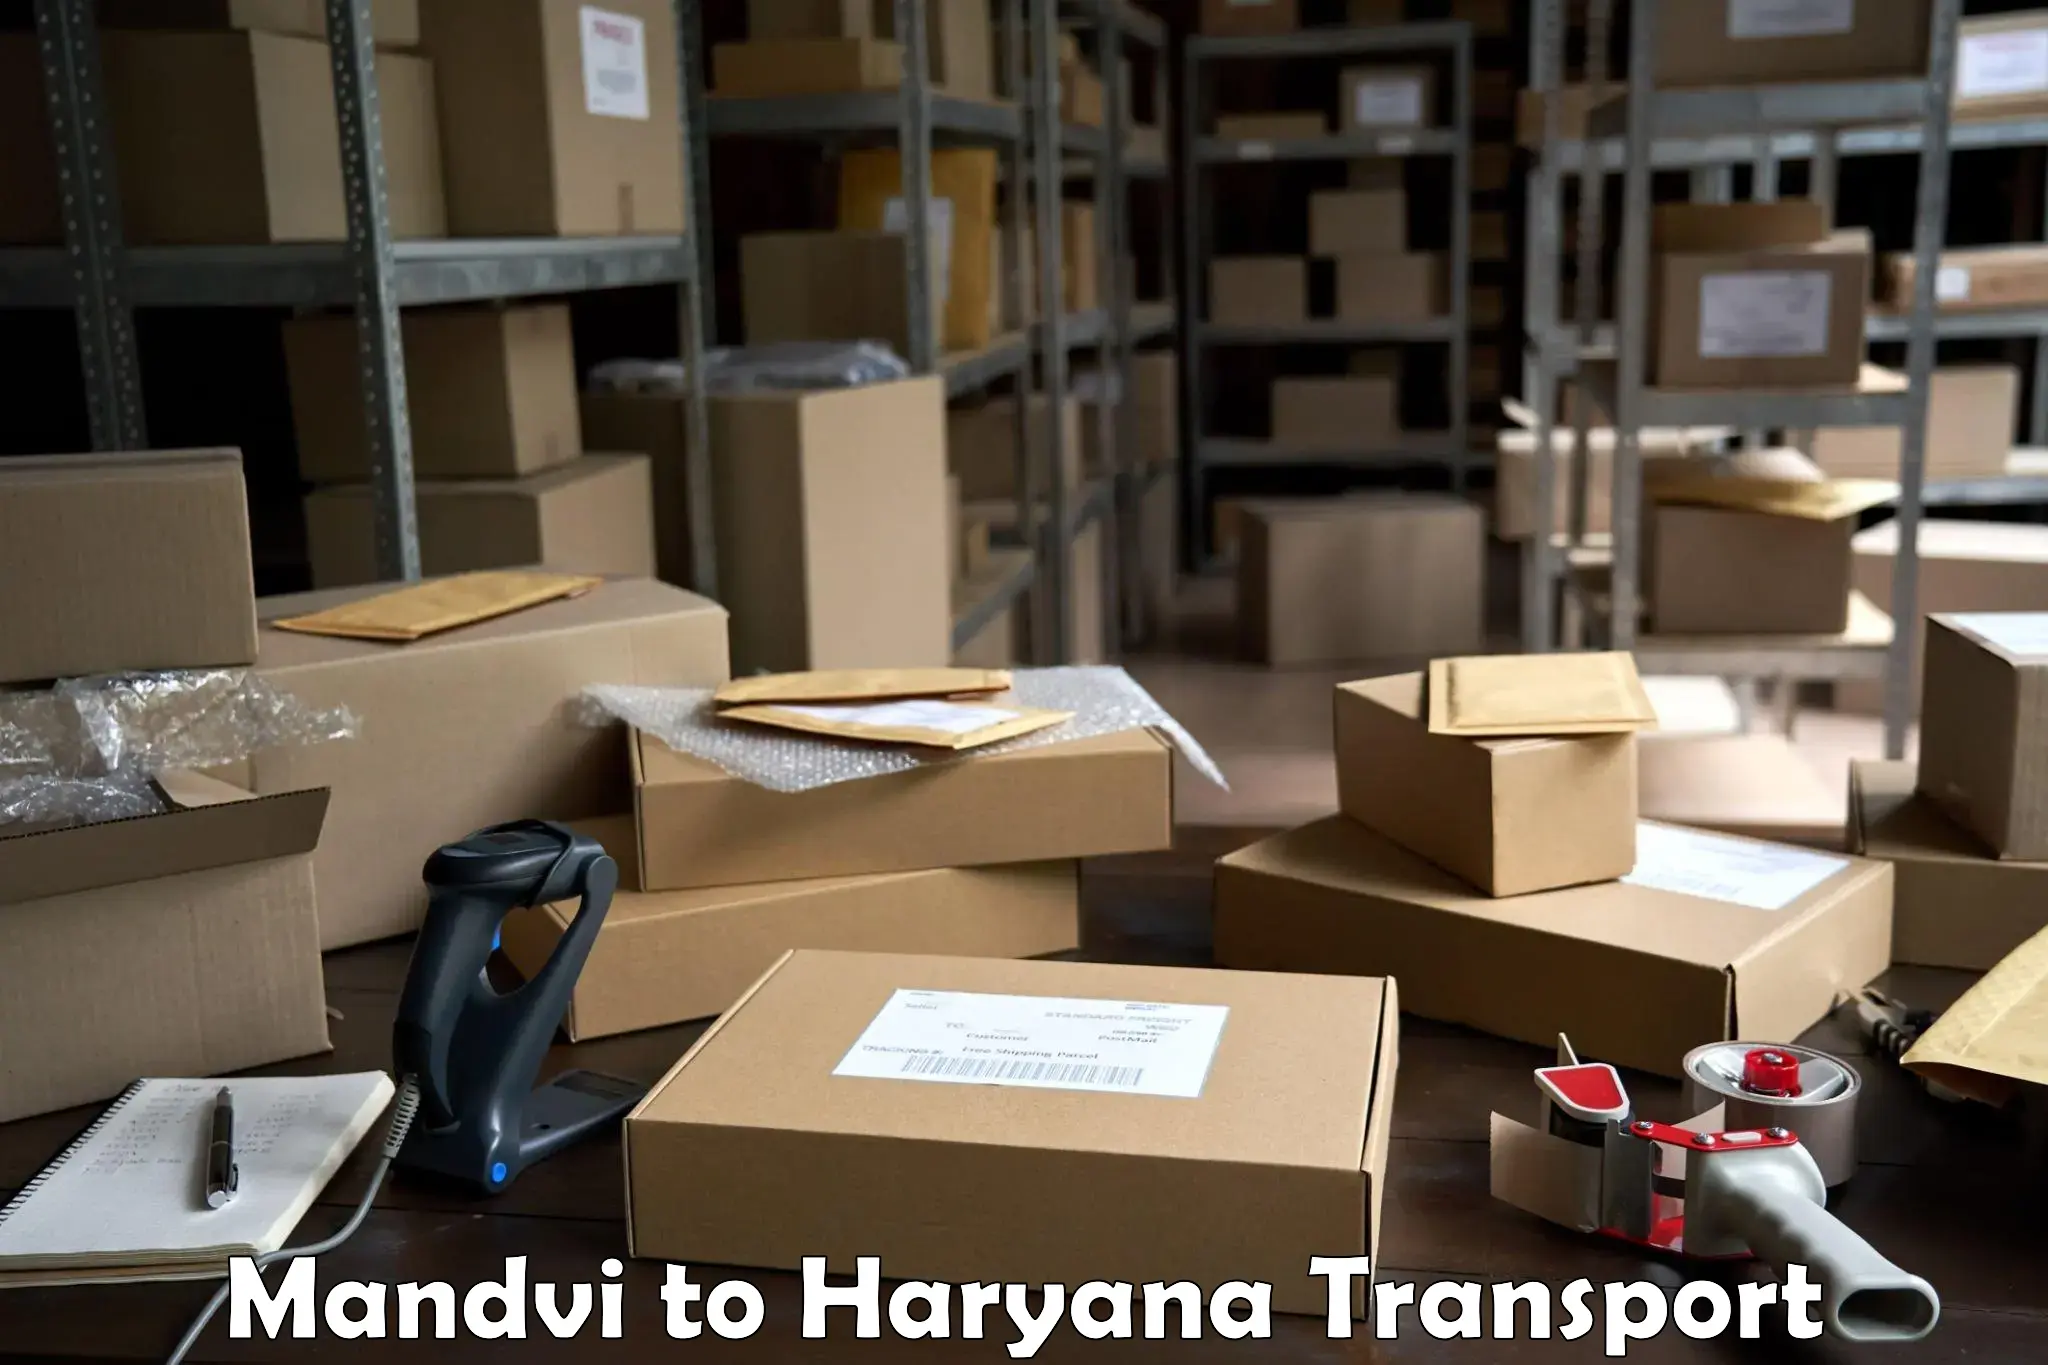 Furniture transport service Mandvi to Kurukshetra